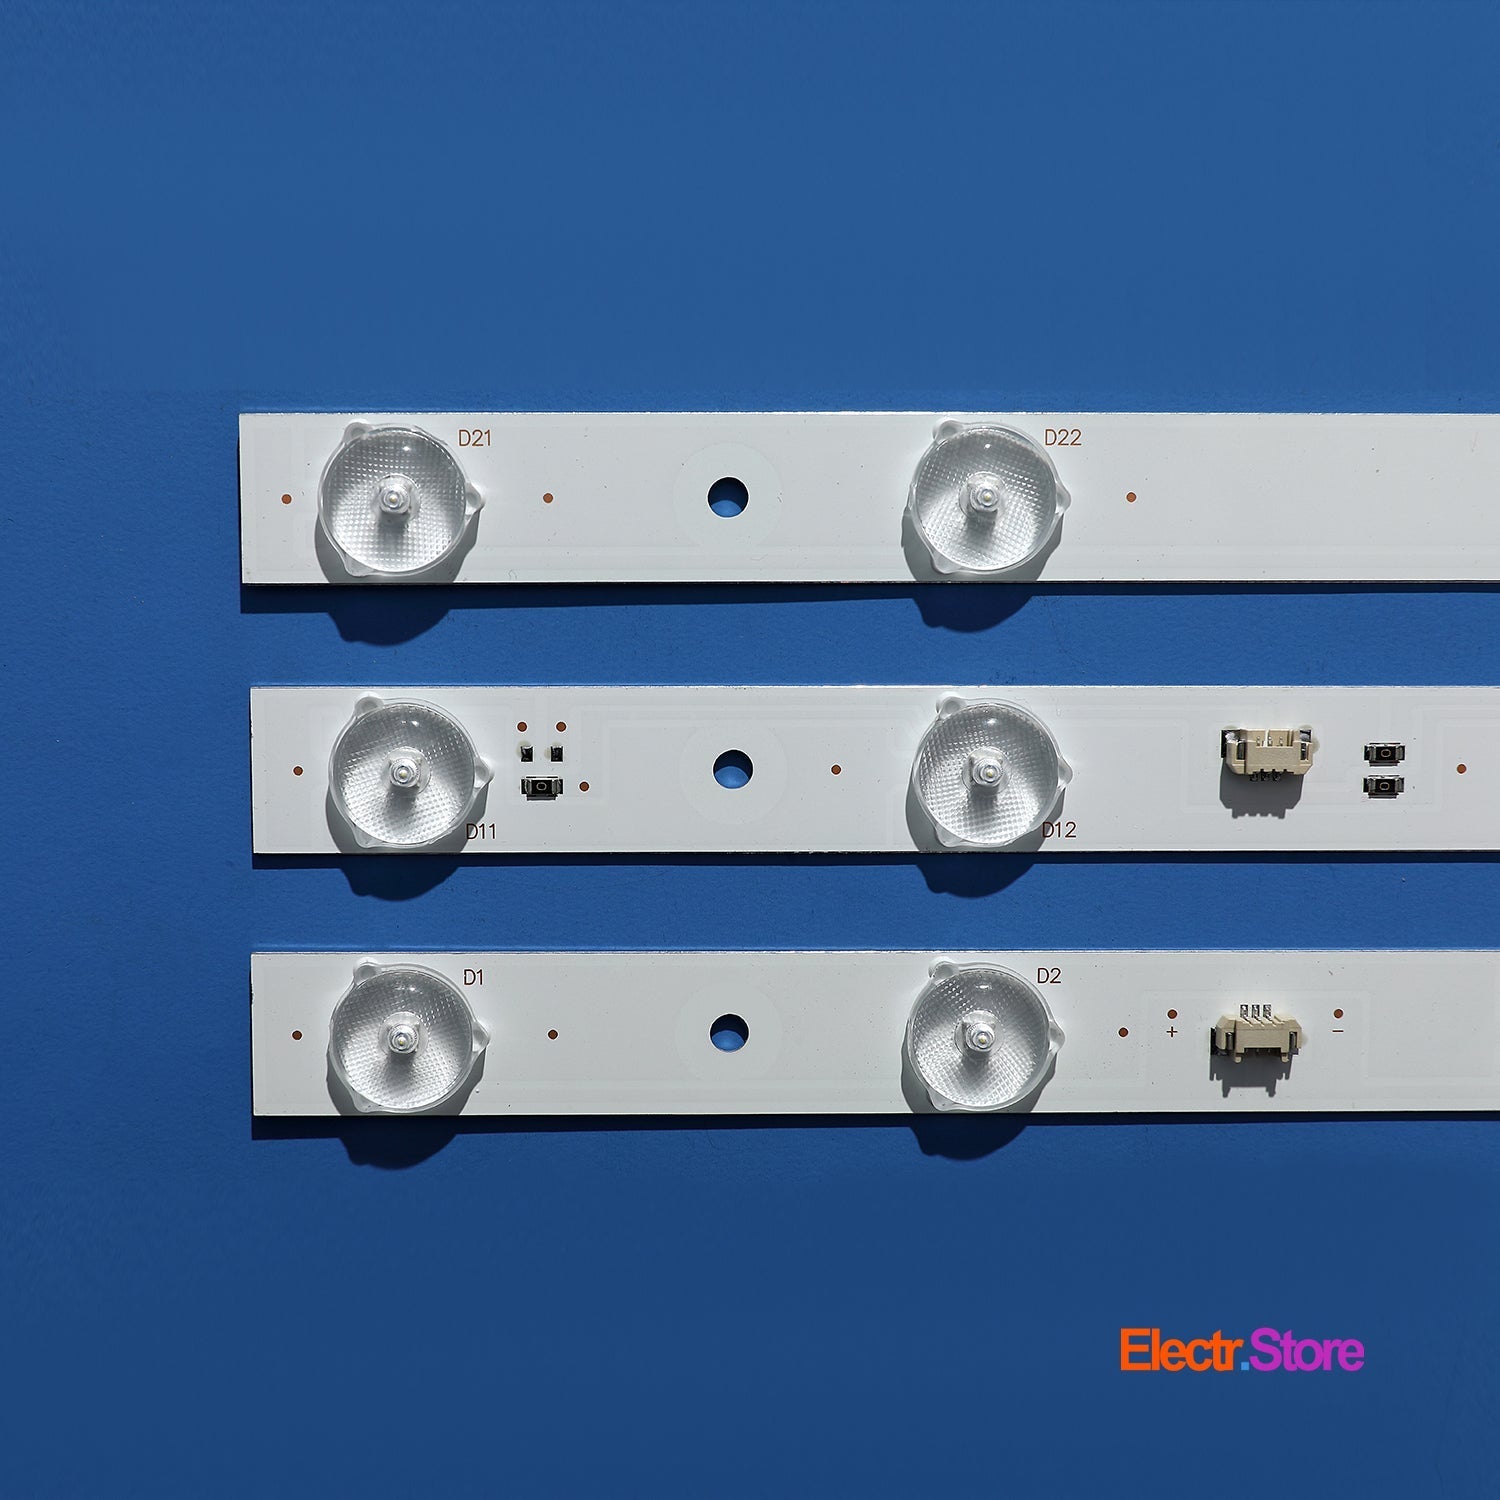 LED Backlight Strip Kits, 30331510211, LED315D10-ZC14-01(C), LED315D10-ZC14-01(D) (3 pcs/kit), for TV 32" HAIER: LE32B310N, LE32A7100L, LE32A31, LE32B510X 32" Haier JVC LED Backlights LED315D10-ZC14-01(C) Electr.Store